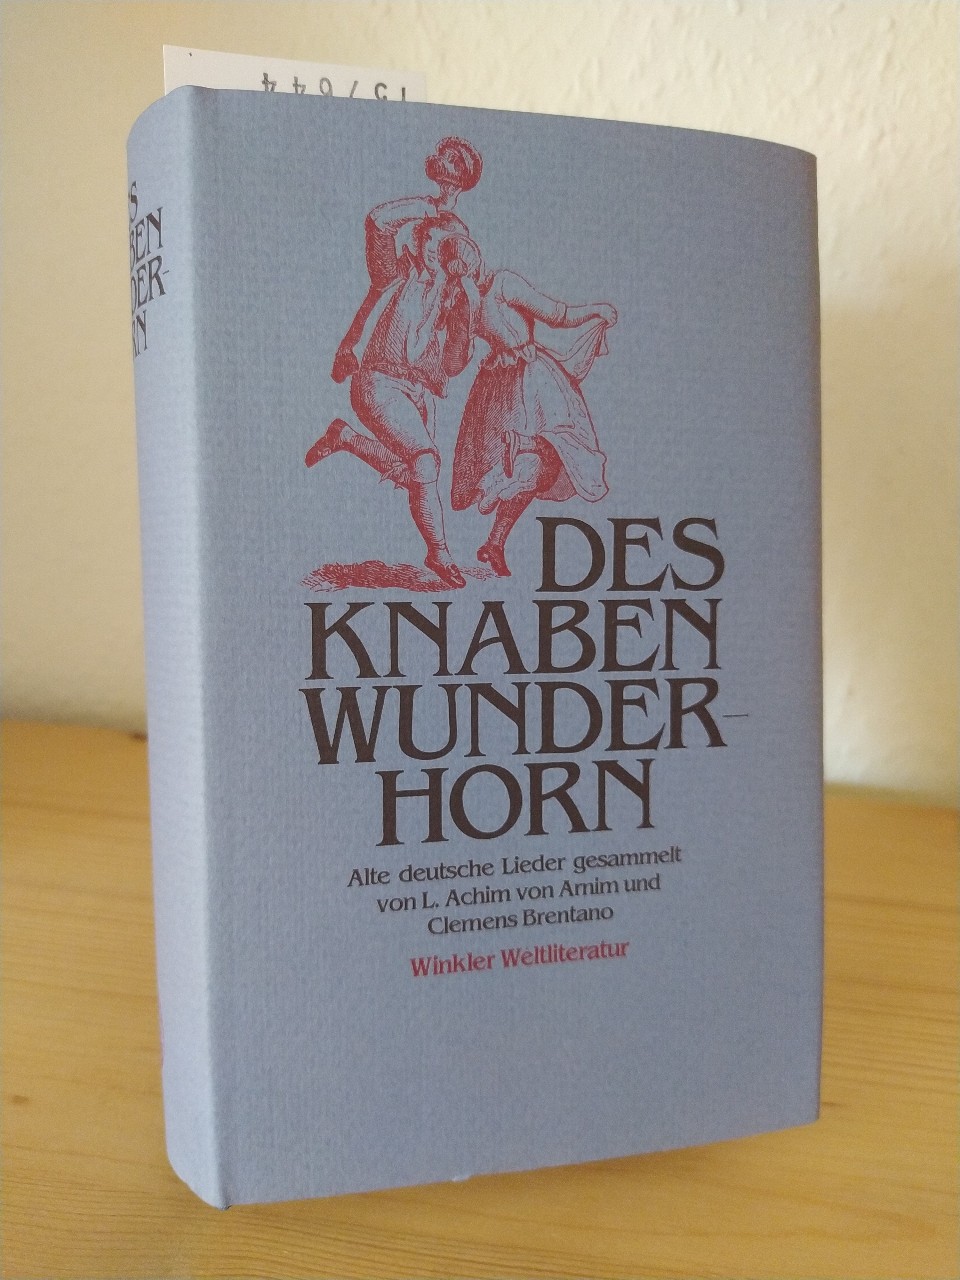 Des Knaben Wunderhorn. Alte deutsche Lieder gesammelt von L. Achim von Arnim und Clemens Brentano. - Arnim, Ludwig Achim von (Hrsg.) und Clemens Brentano (Hrsg.)